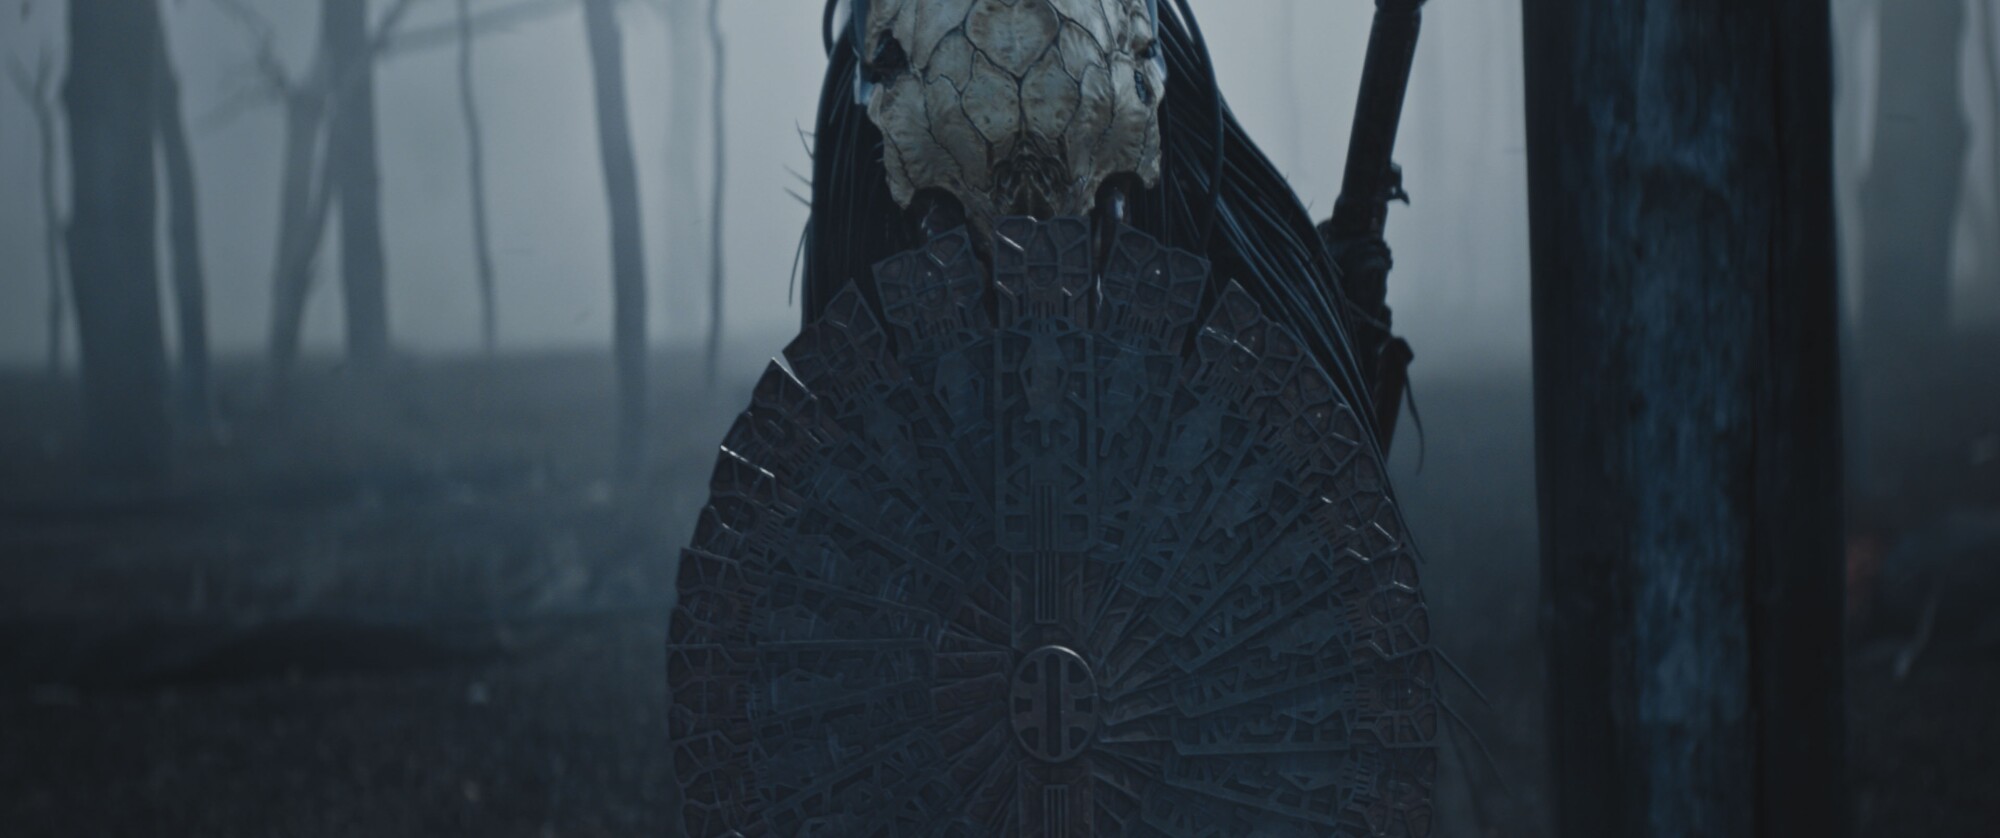 Dane DiLiegro como Predator en otra escena del filme.